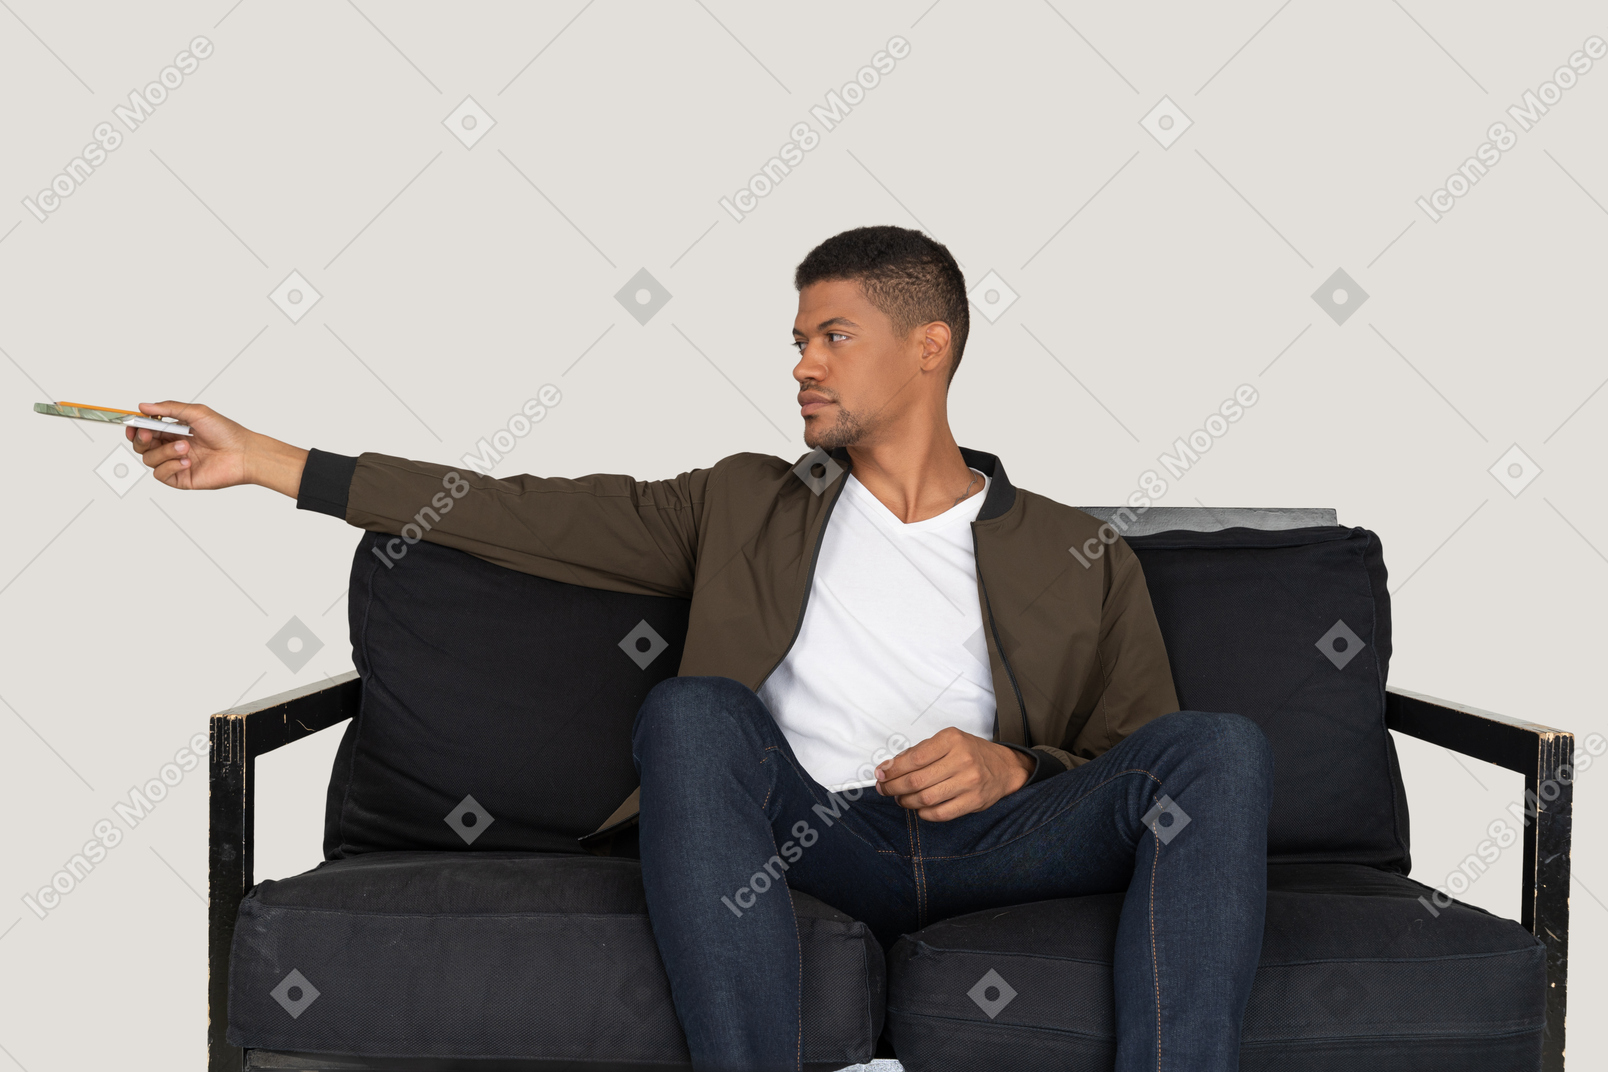 Вид спереди молодого человека, сидящего на диване и проходящего мимо ручки с блокнотом